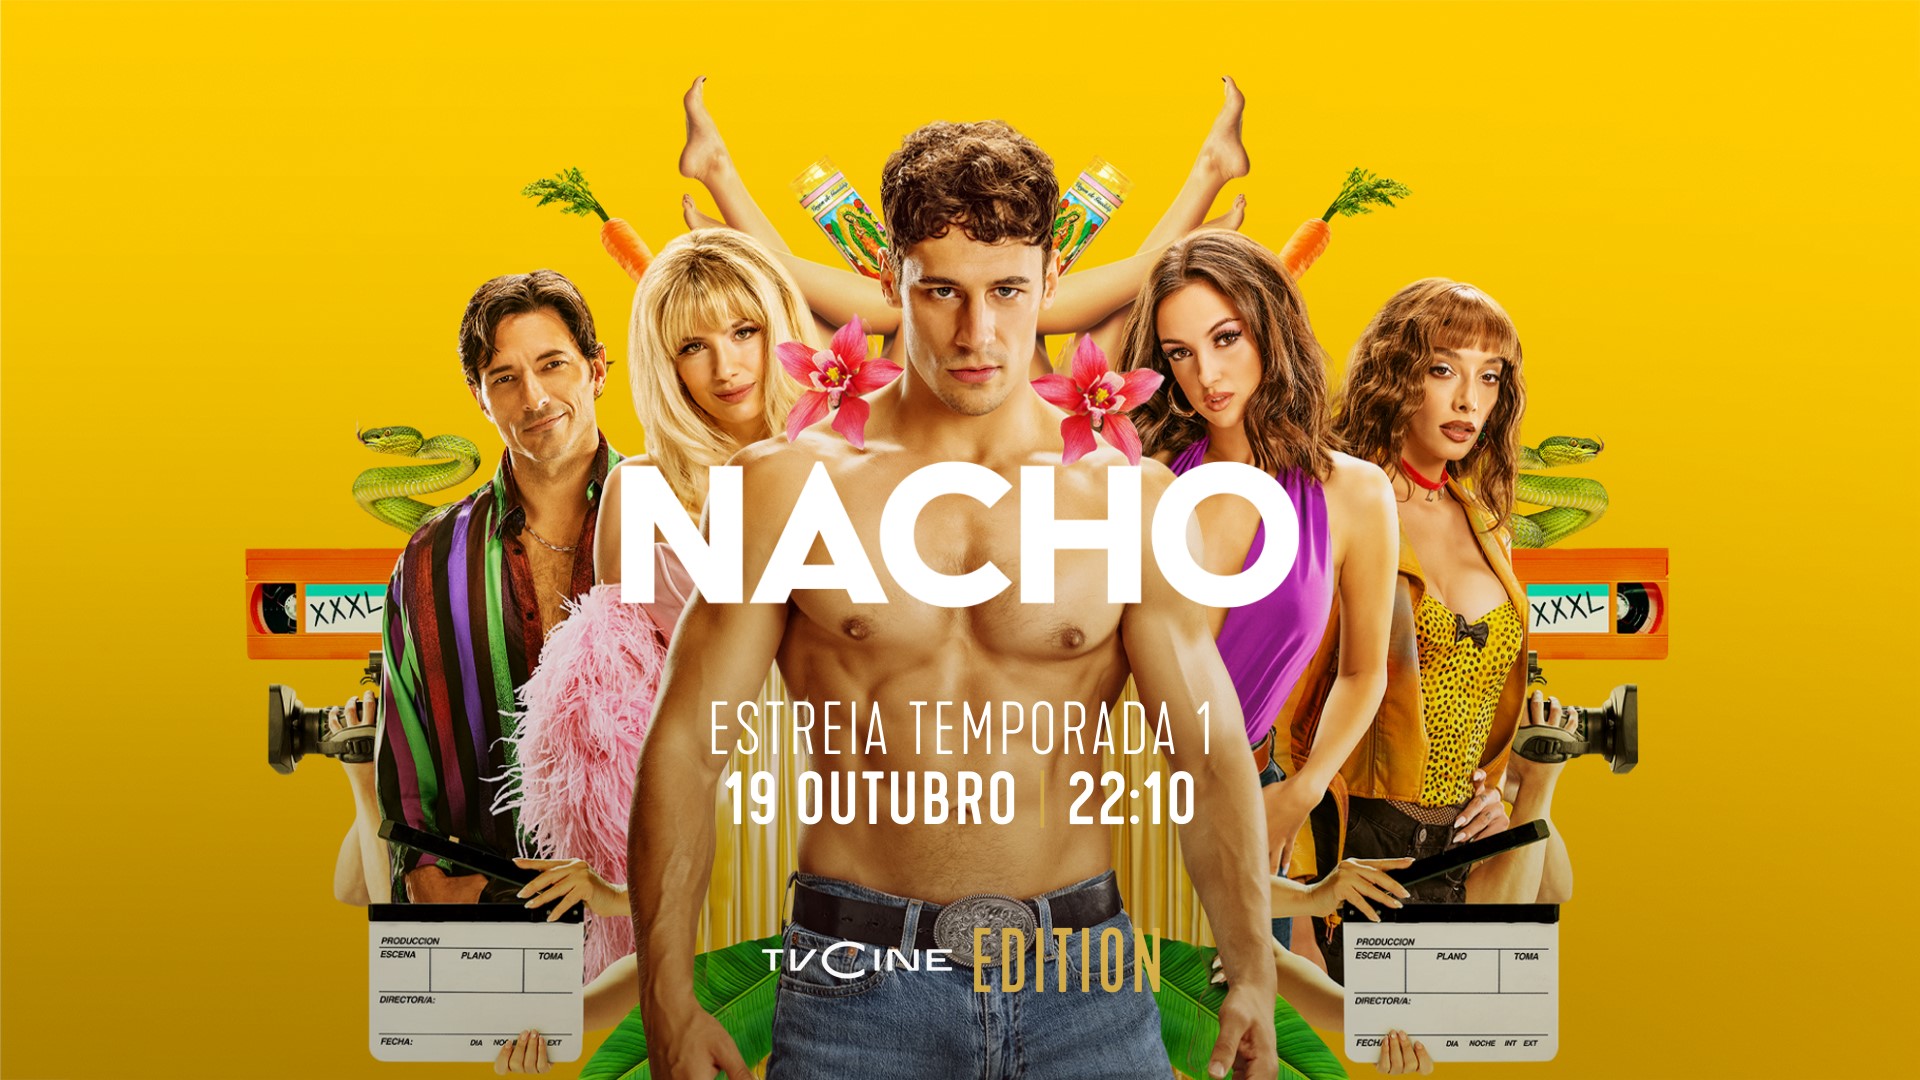 Nacho Estreia No Tvcine Edition 